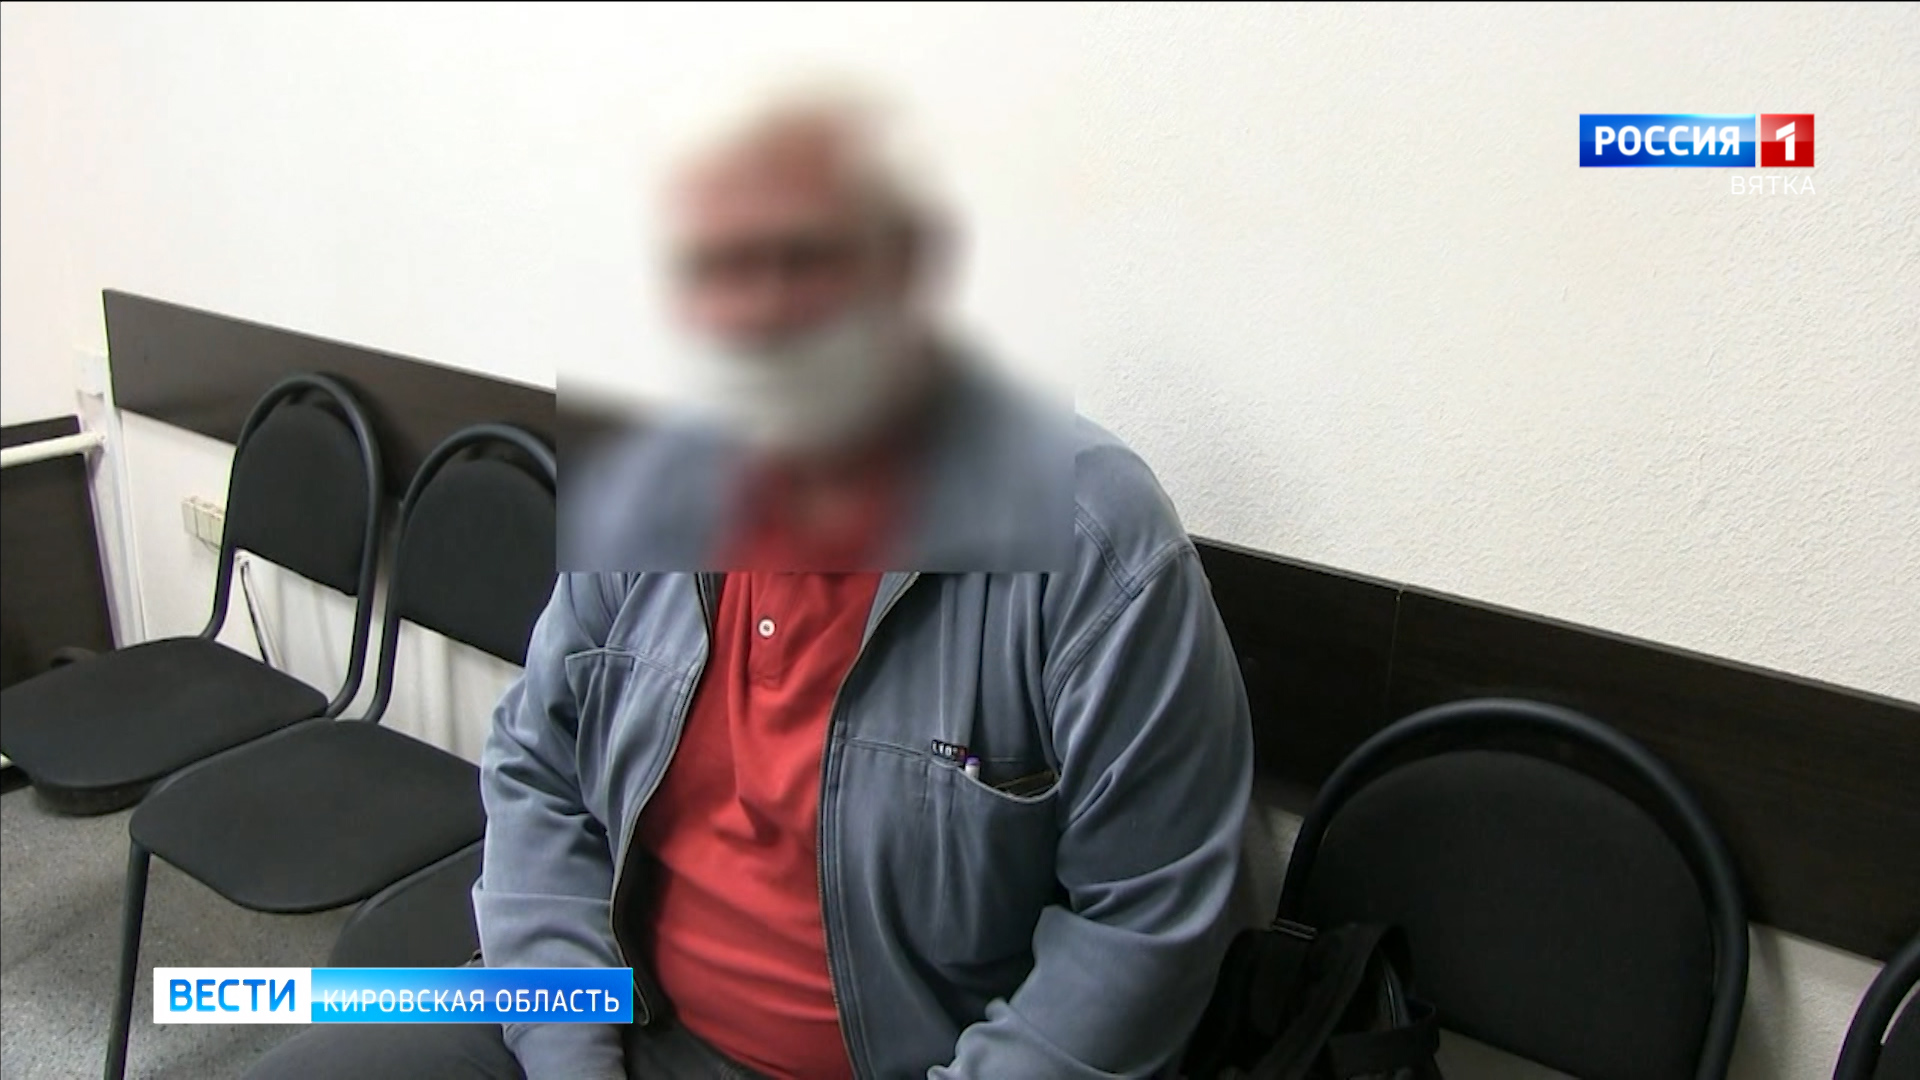 Полицейский отговорил жителя Кирова переводить 1,3 млн рублей мошенникам